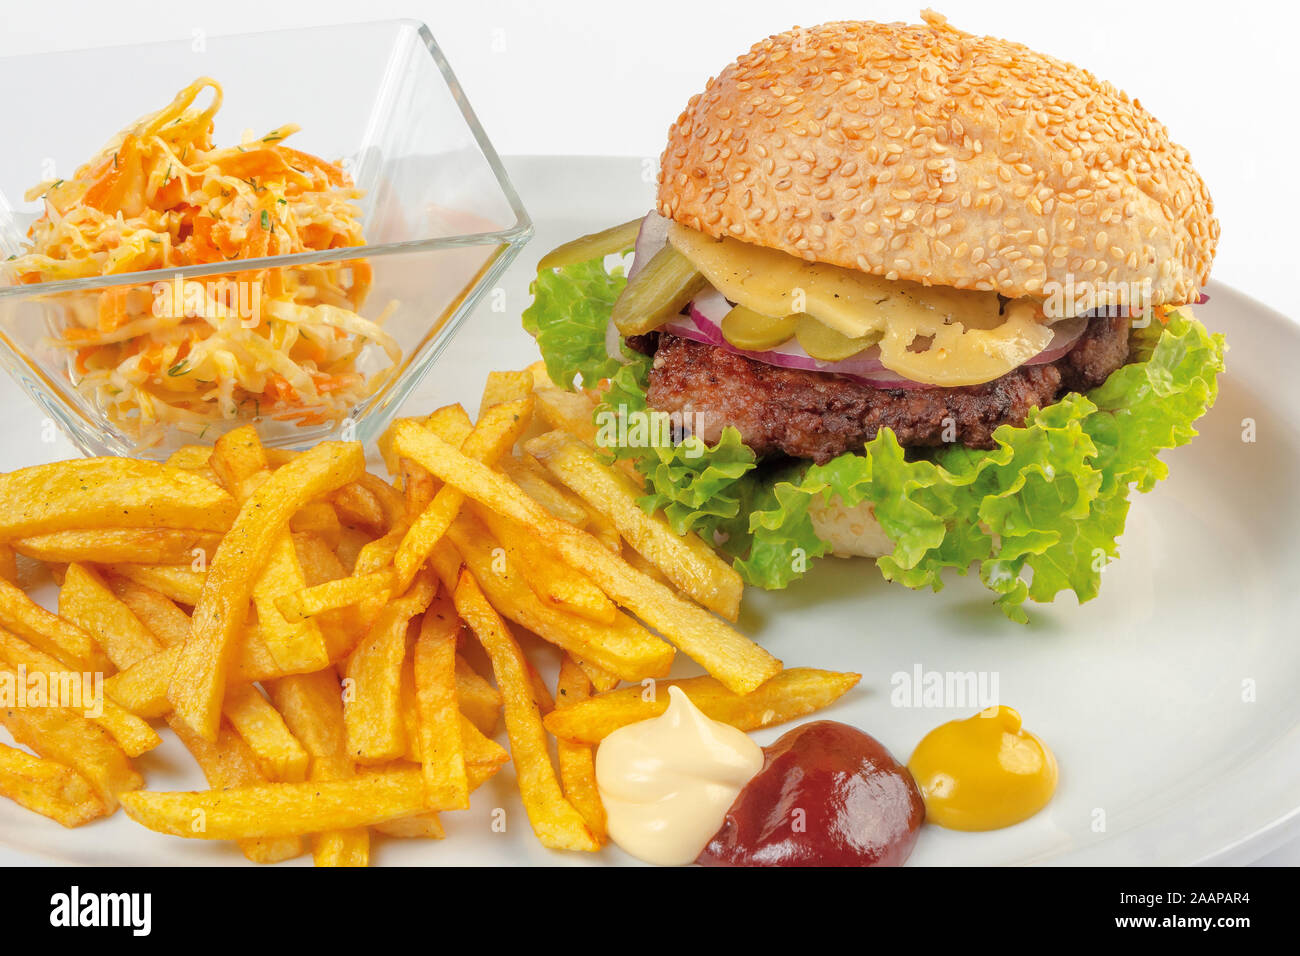 Fast food Menü. Hamburger, Pommes frites und Salat. Burger mit Rindfleisch, Käse, Zwiebel und essiggurke. Mayonnaise ketchup Senf auf die weiße Platte. hea Stockfoto